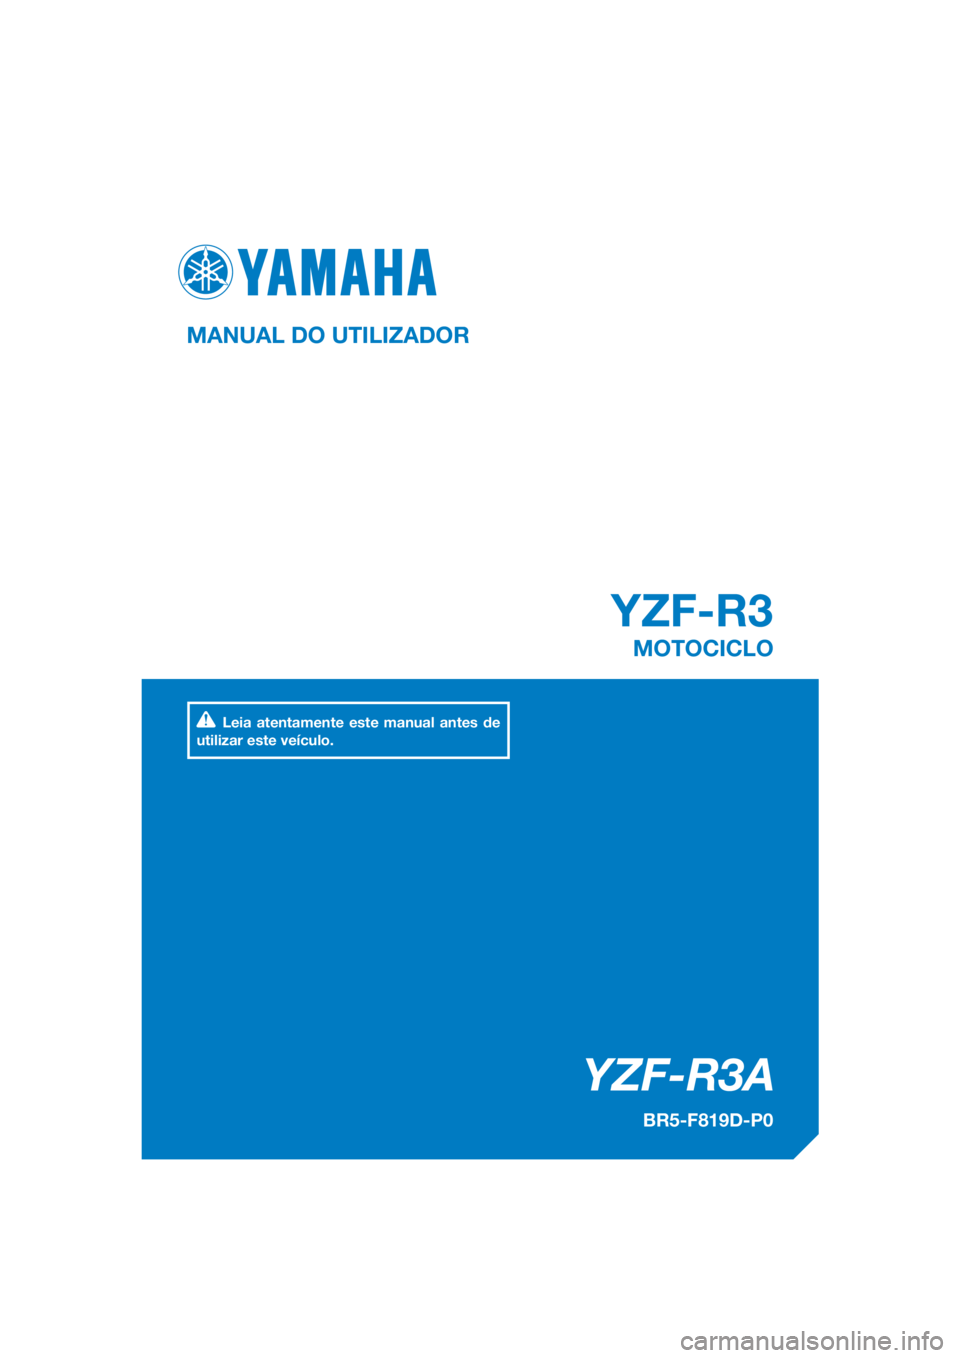 YAMAHA YZF-R3 2018  Manual de utilização (in Portuguese) DIC183
YZF-R3
YZF-R3A
MANUAL DO UTILIZADOR
BR5-F819D-P0
MOTOCICLO
Leia atentamente este manual antes de 
utilizar este veículo.
[Portuguese  (P)] 